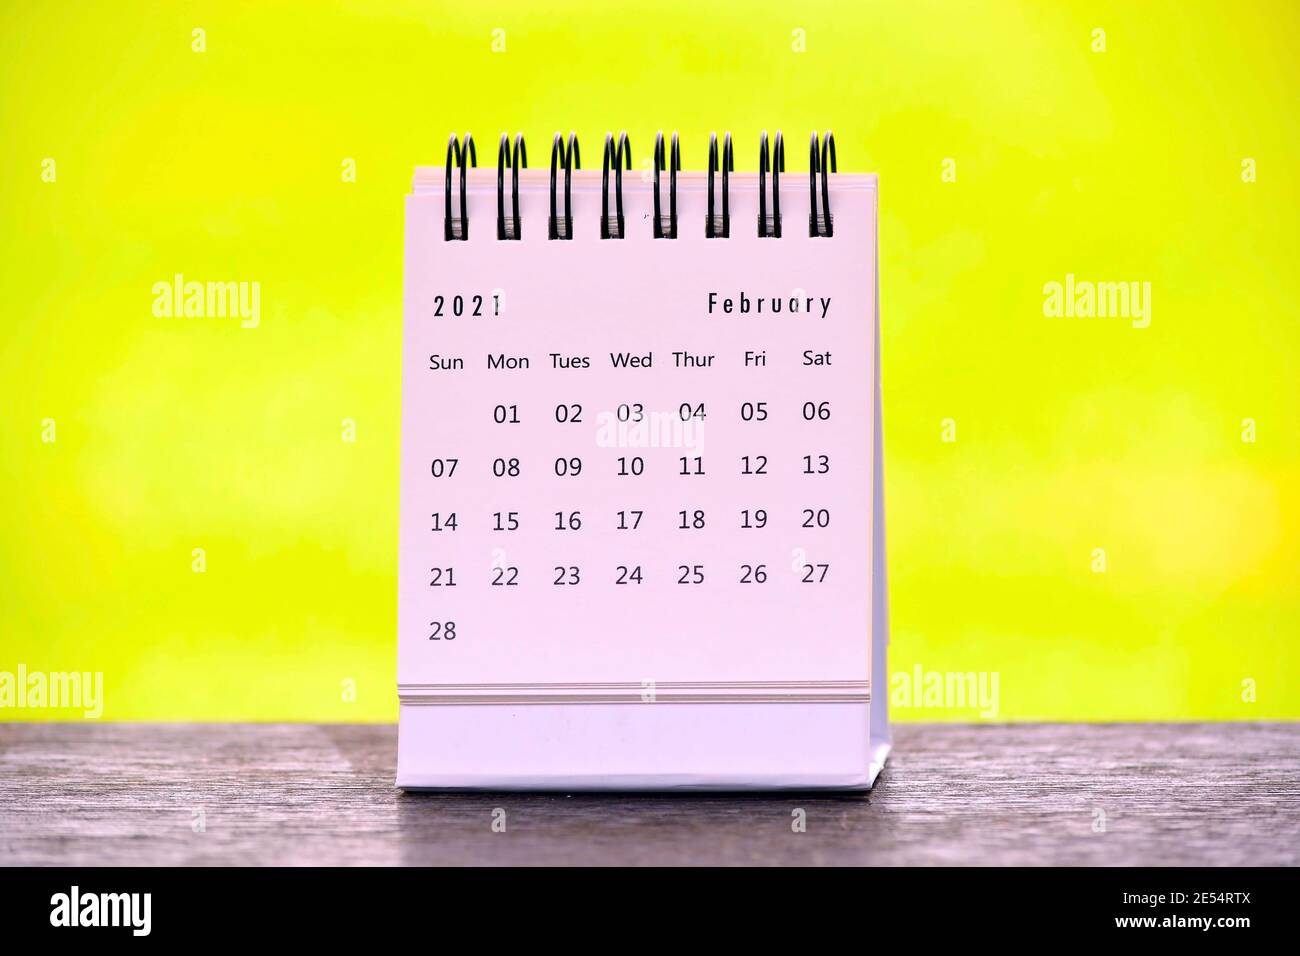 Calendrier blanc de février 2021 avec fond jaune. Concept de la nouvelle année Banque D'Images